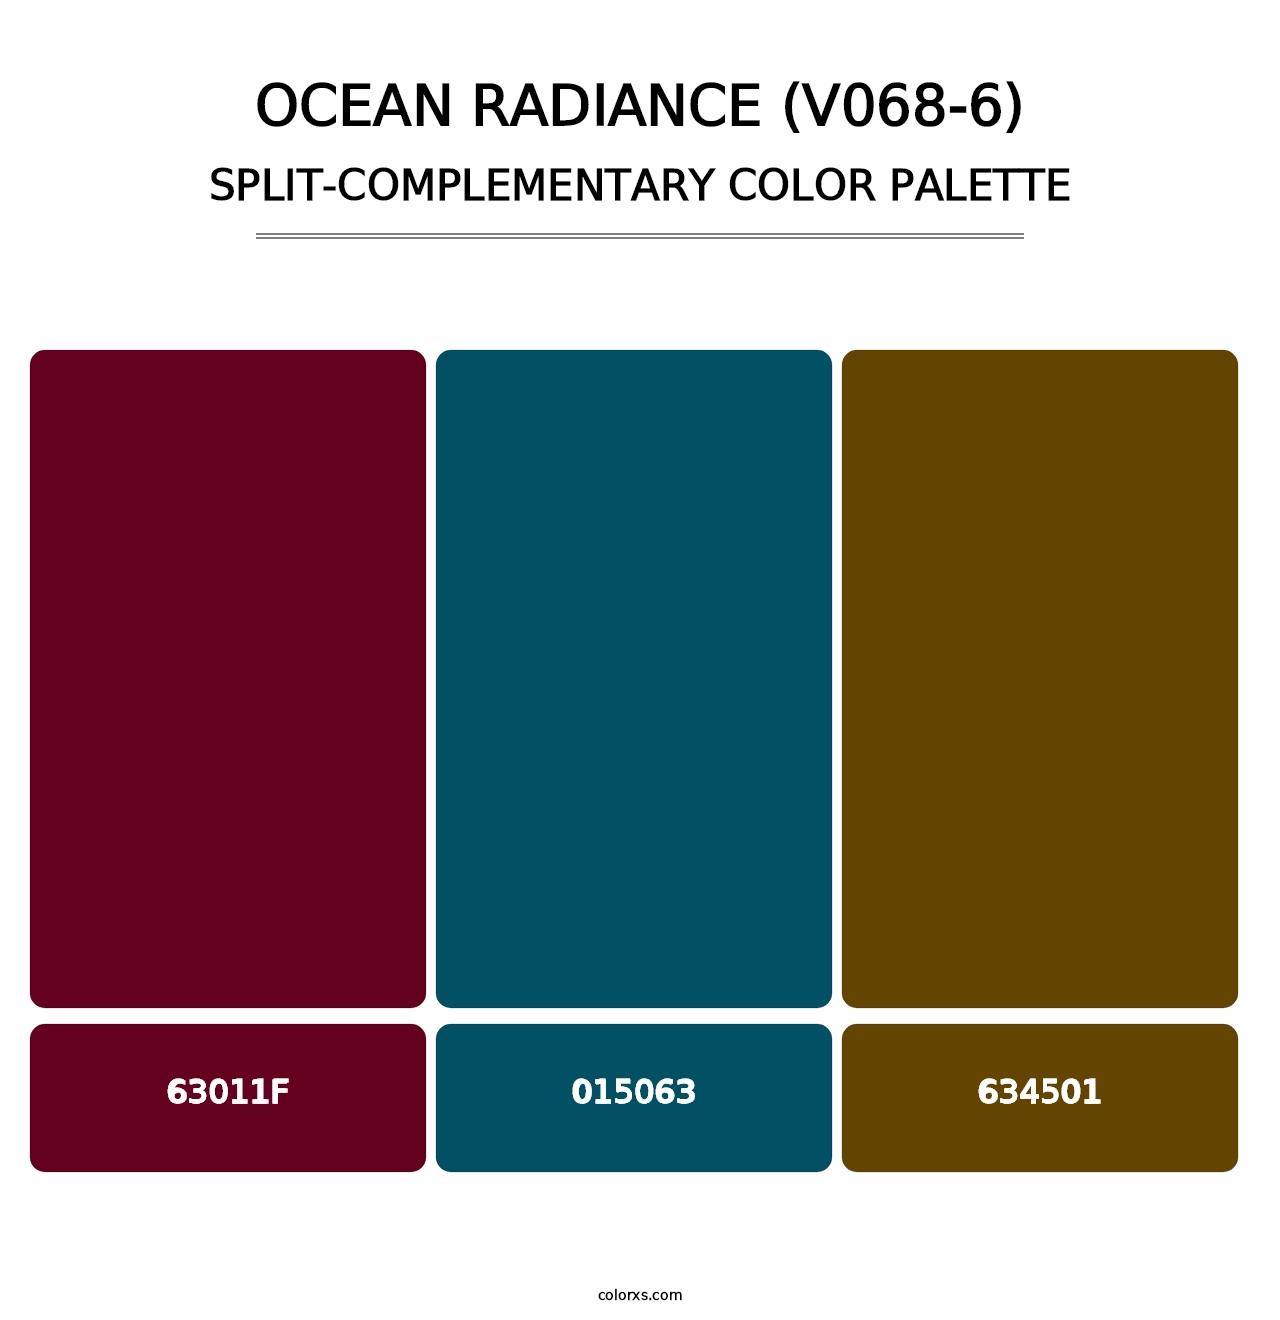 Ocean Radiance (V068-6) - Split-Complementary Color Palette